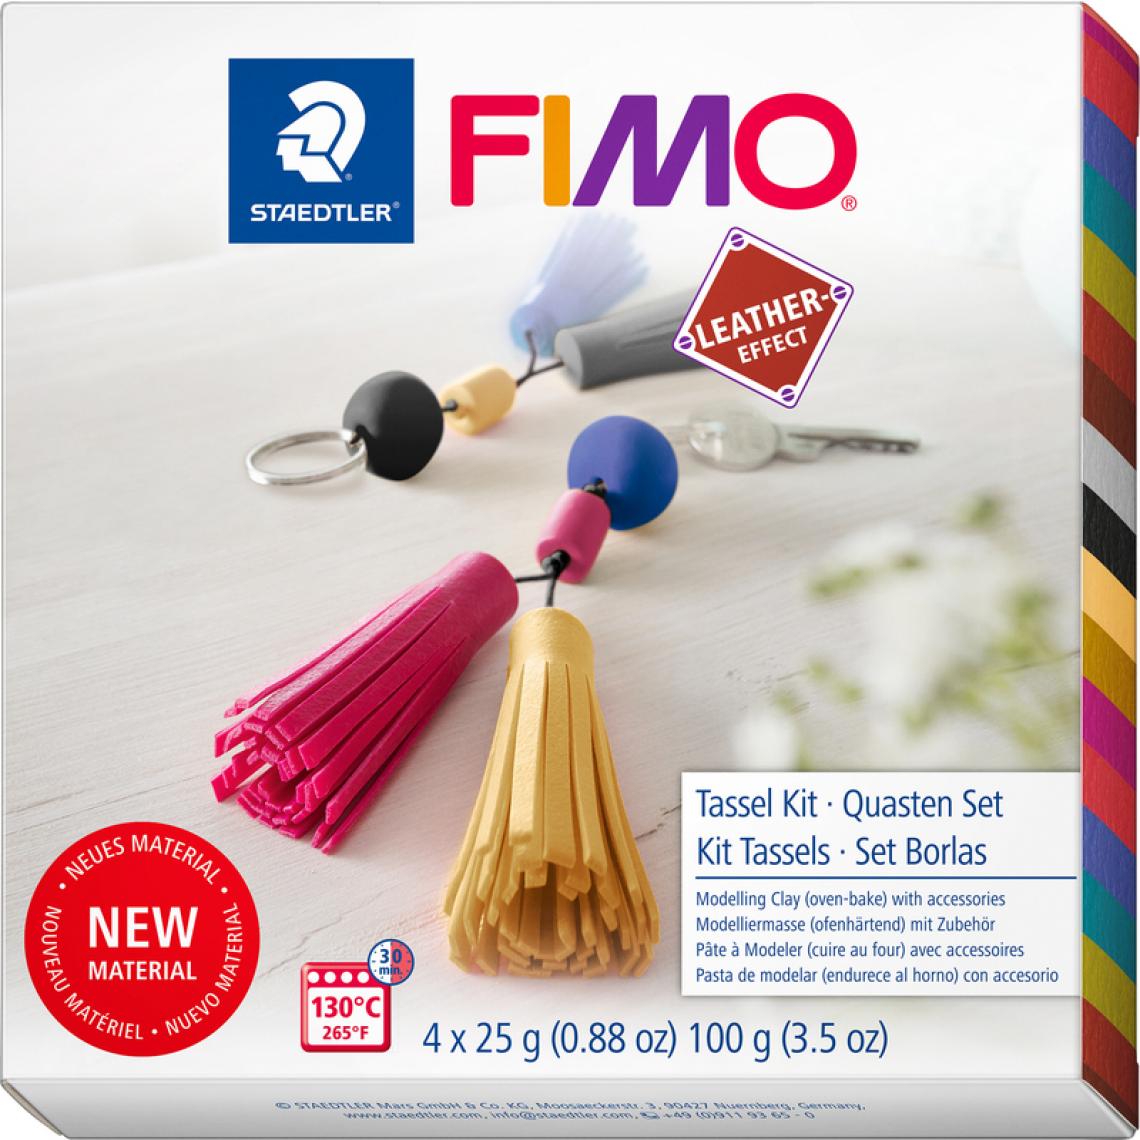 Fimo - FIMO EFFECT LEATHER Kit de modelage Tassels, à cuire au four () - Modelage